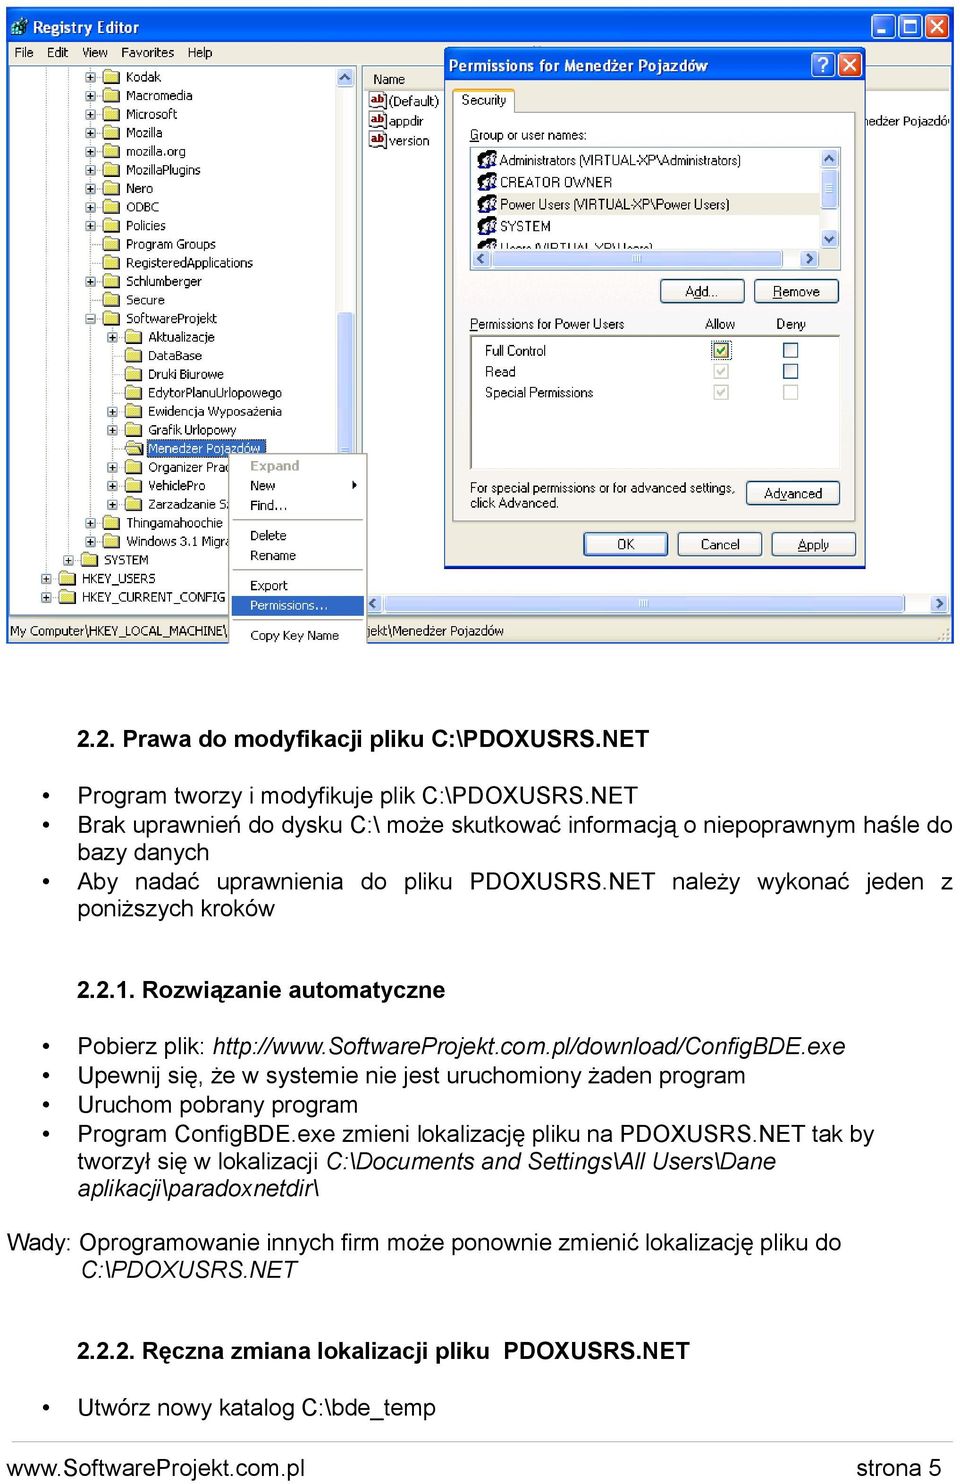 Rozwiązanie automatyczne Pobierz plik: http://www.softwareprojekt.com.pl/download/configbde.exe Upewnij się, że w systemie nie jest uruchomiony żaden program Uruchom pobrany program Program ConfigBDE.